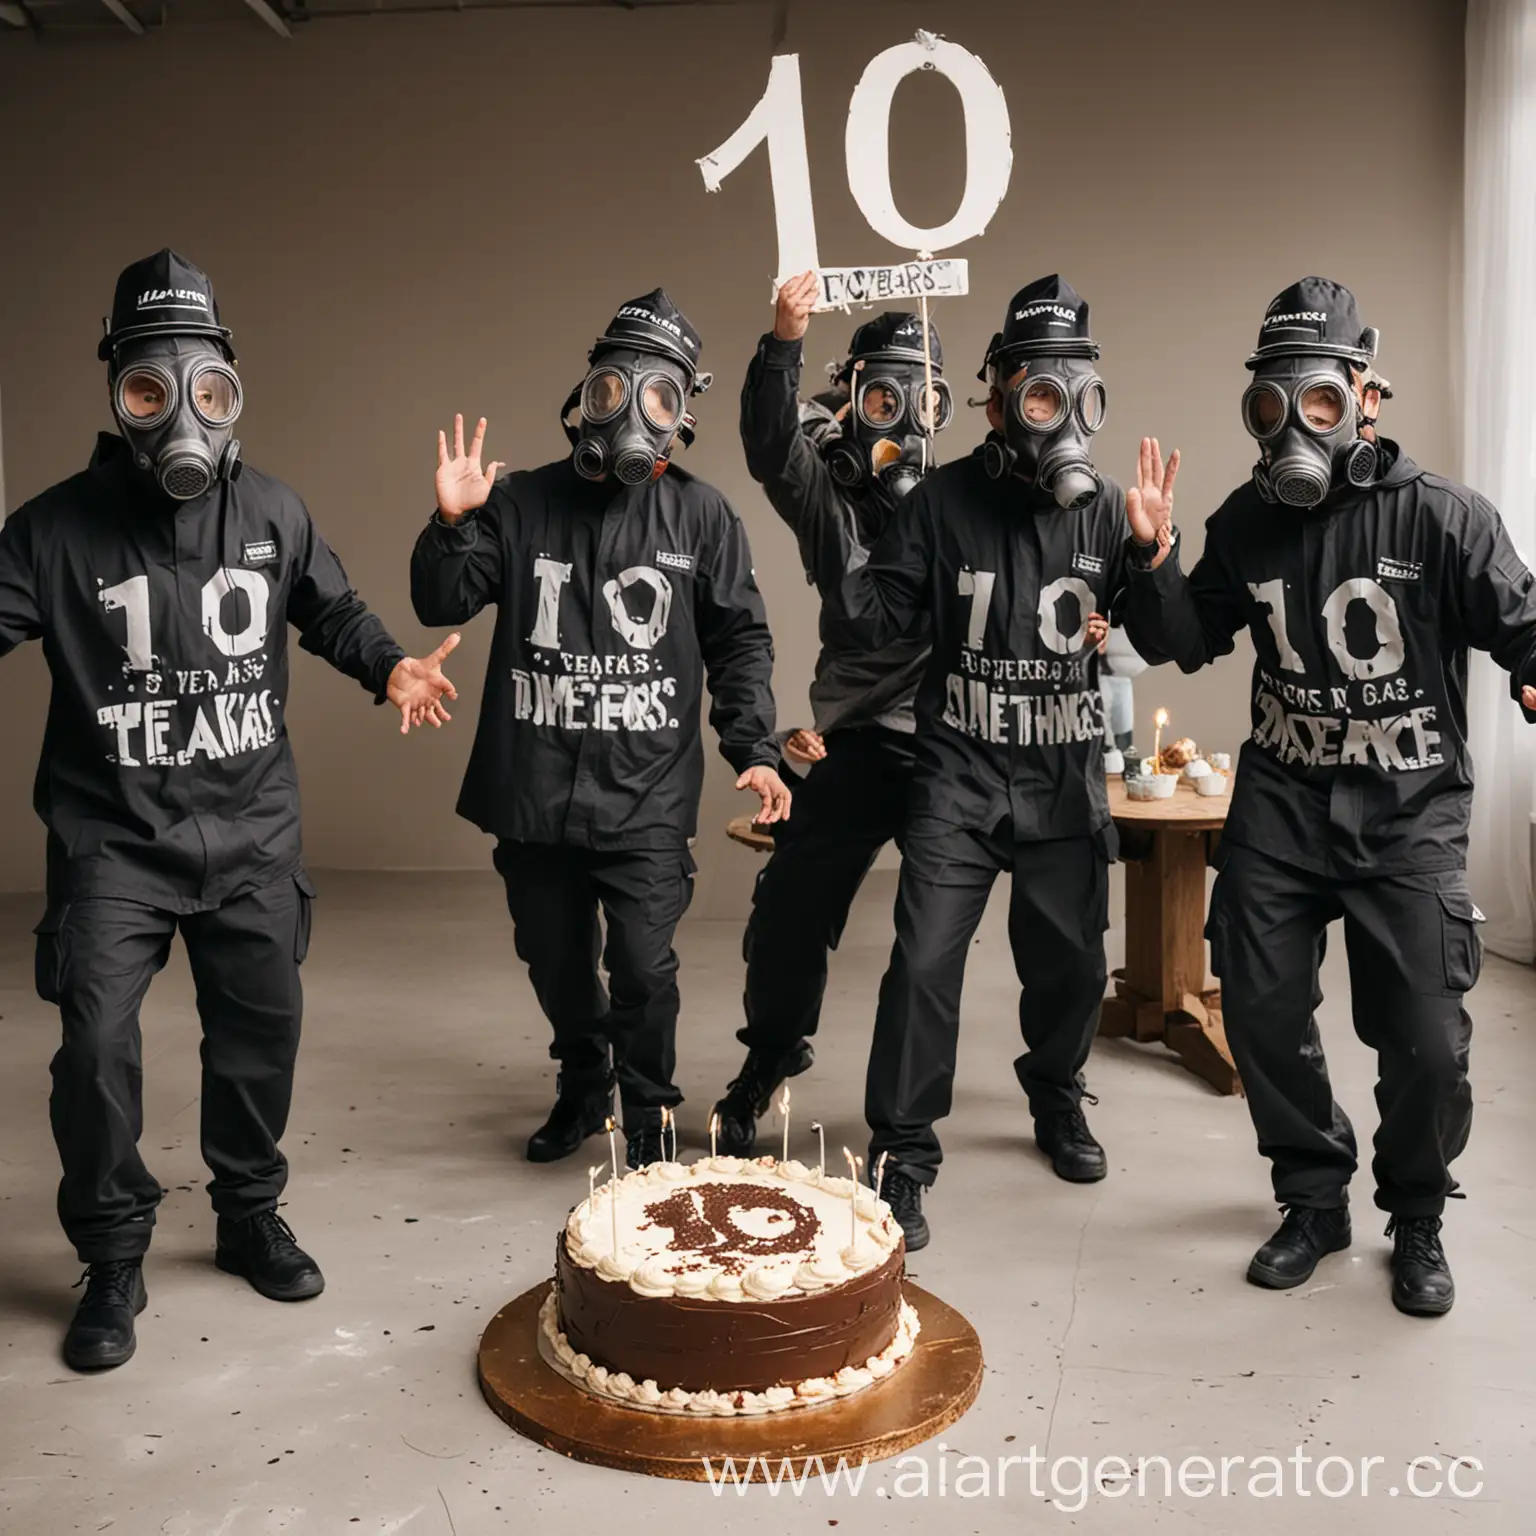 Celebrating-STALCRAFTs-10Year-Anniversary-Men-in-Gas-Masks-Dance-Around-Birthday-Cake